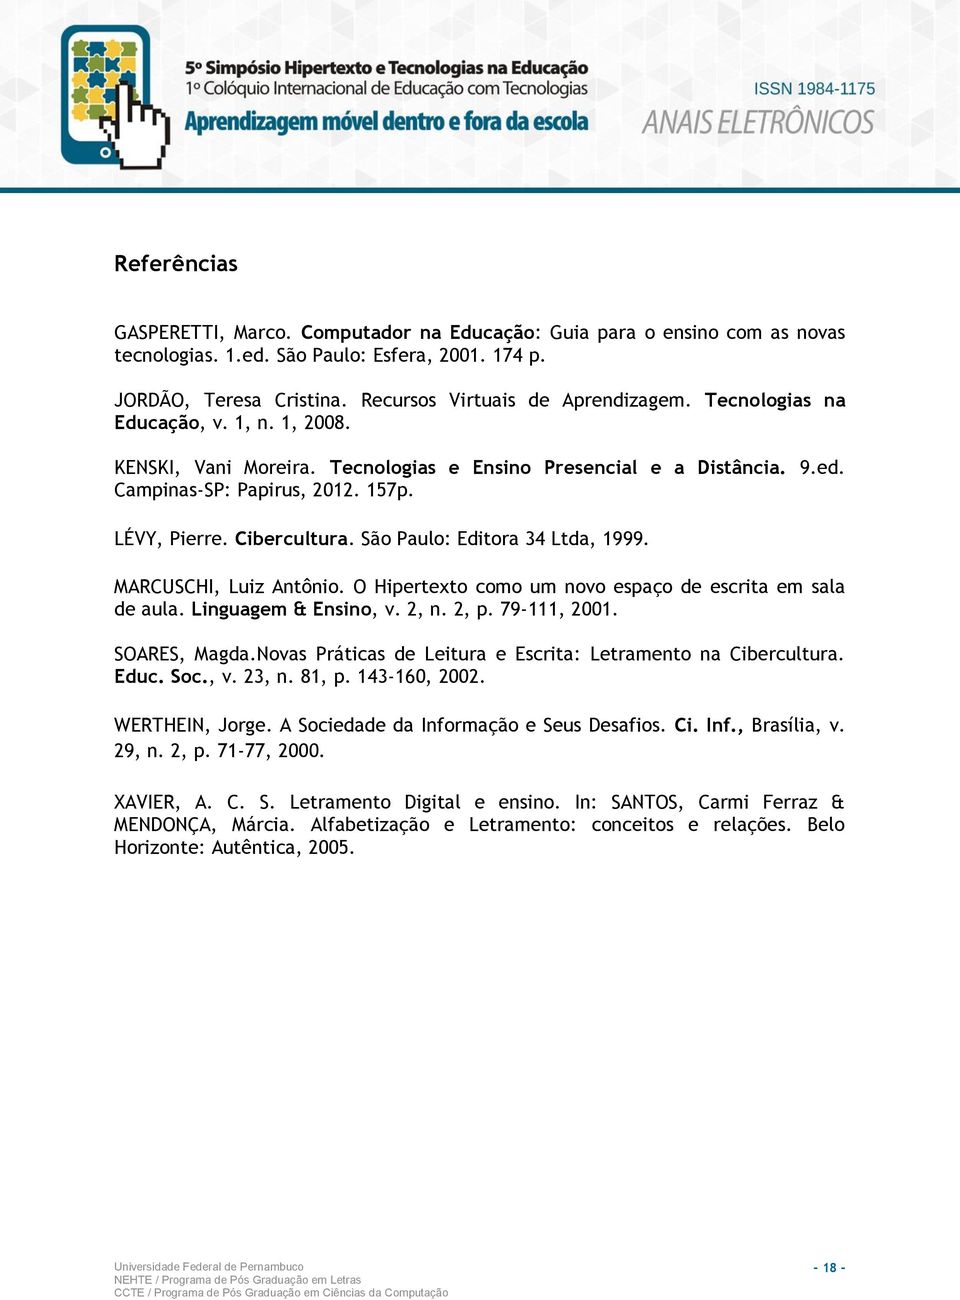 São Paulo: Editora 34 Ltda, 1999. MARCUSCHI, Luiz Antônio. O Hipertexto como um novo espaço de escrita em sala de aula. Linguagem & Ensino, v. 2, n. 2, p. 79-111, 2001. SOARES, Magda.